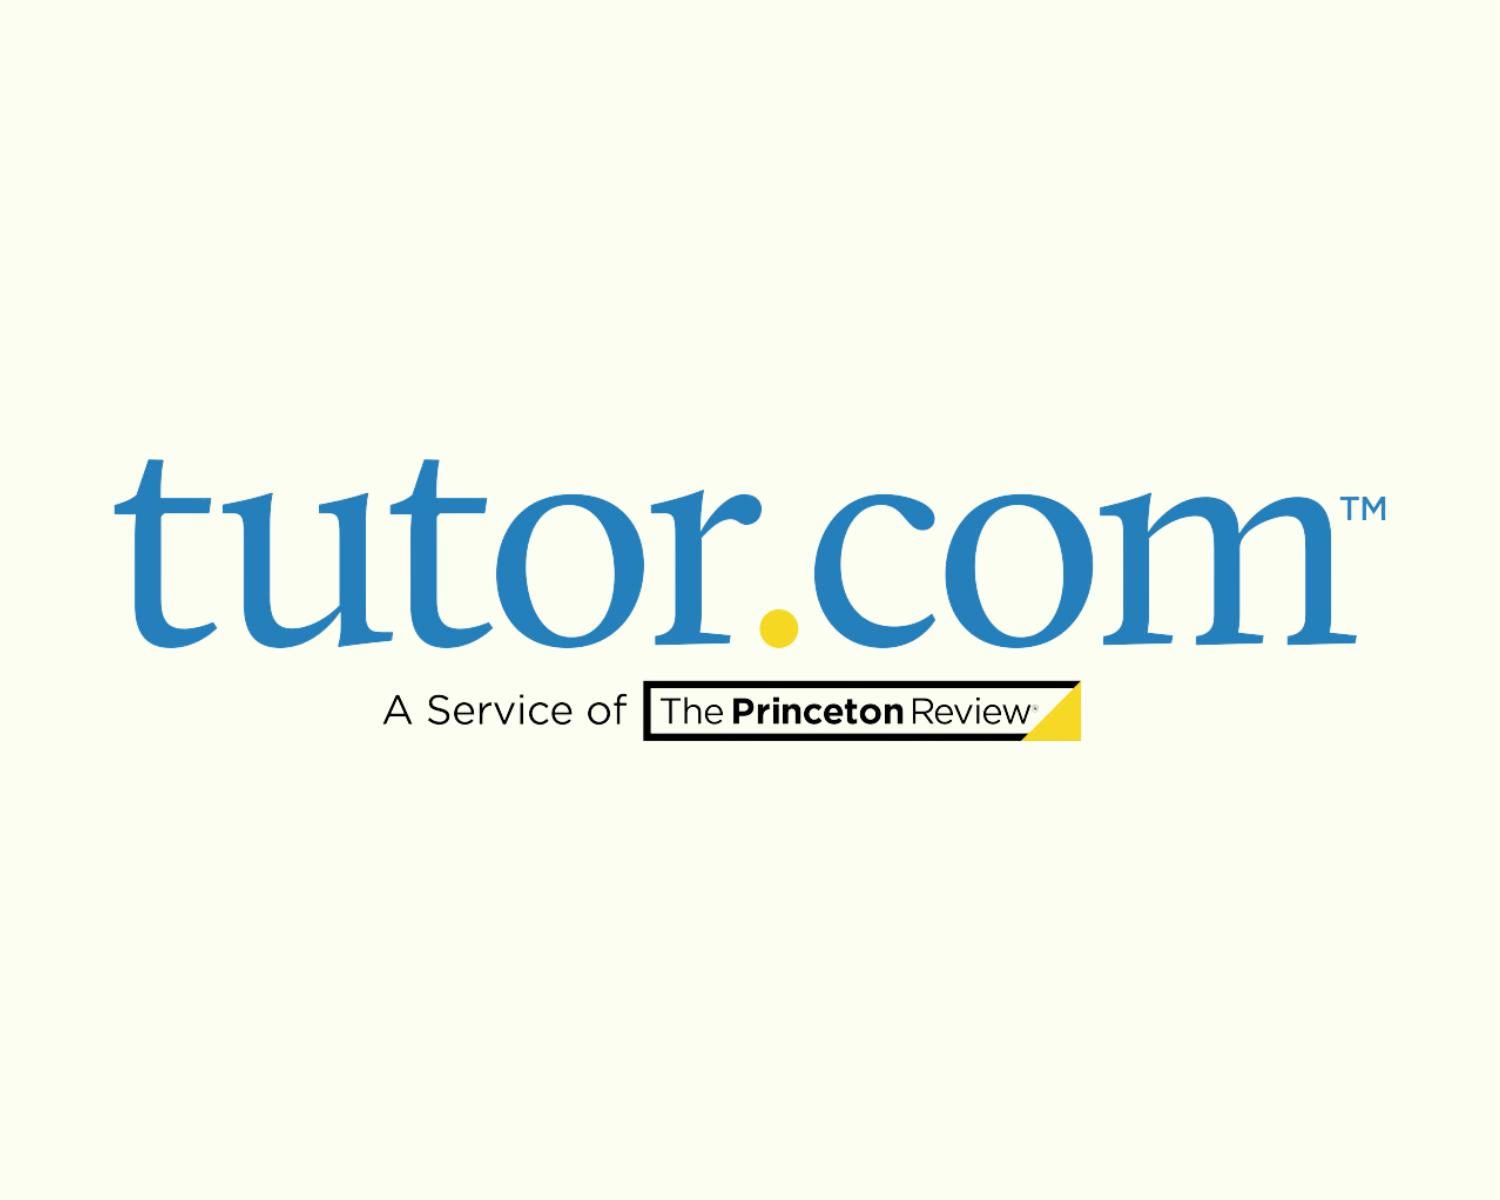 tutor.com: a service of The Princeton Review